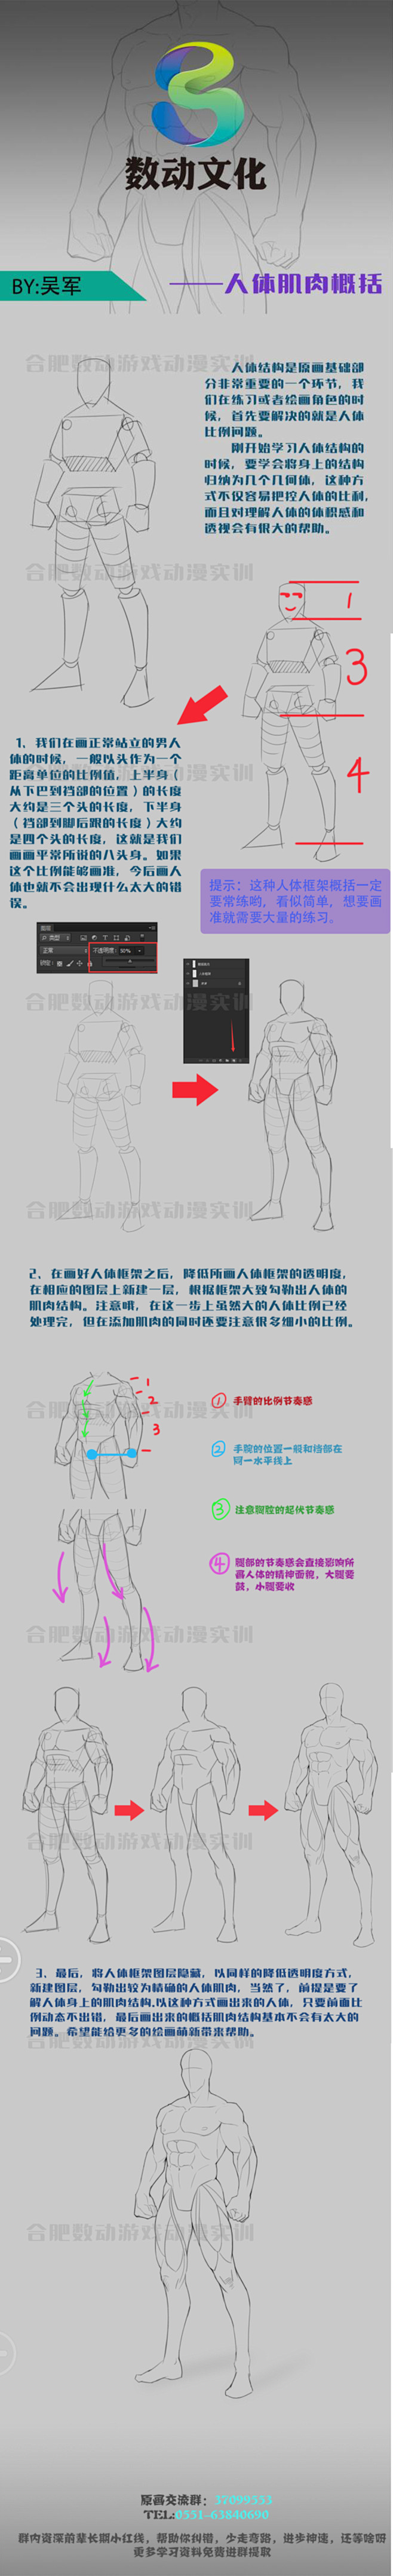 CG人体肌肉概括人体教程游戏教程